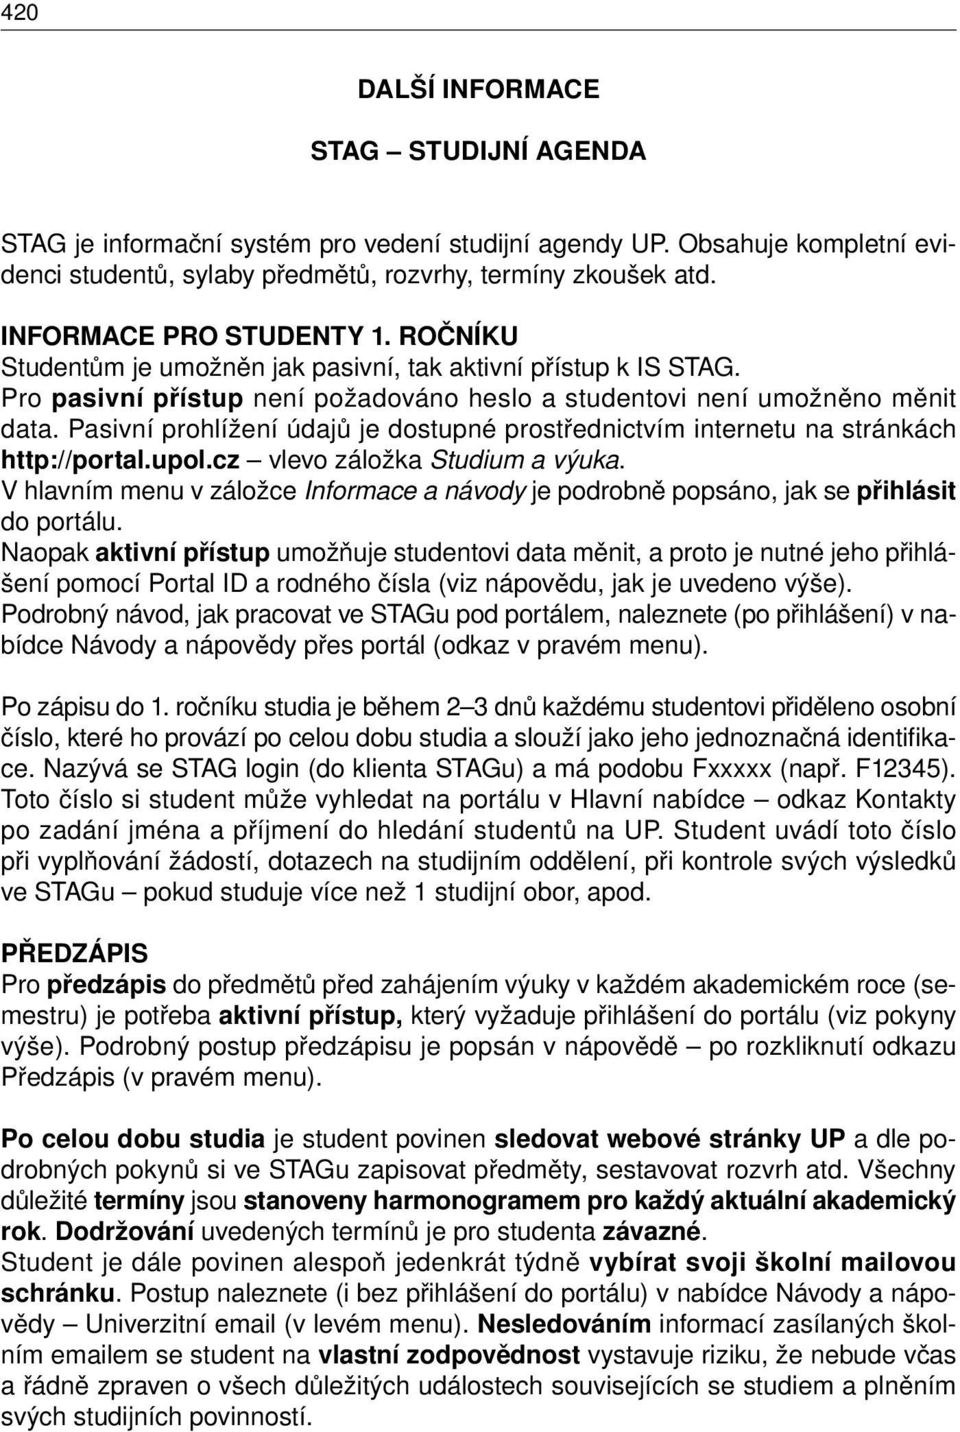 Pasivní prohlížení údajů je dostupné prostřednictvím internetu na stránkách http://portal.upol.cz vlevo záložka Studium a výuka.